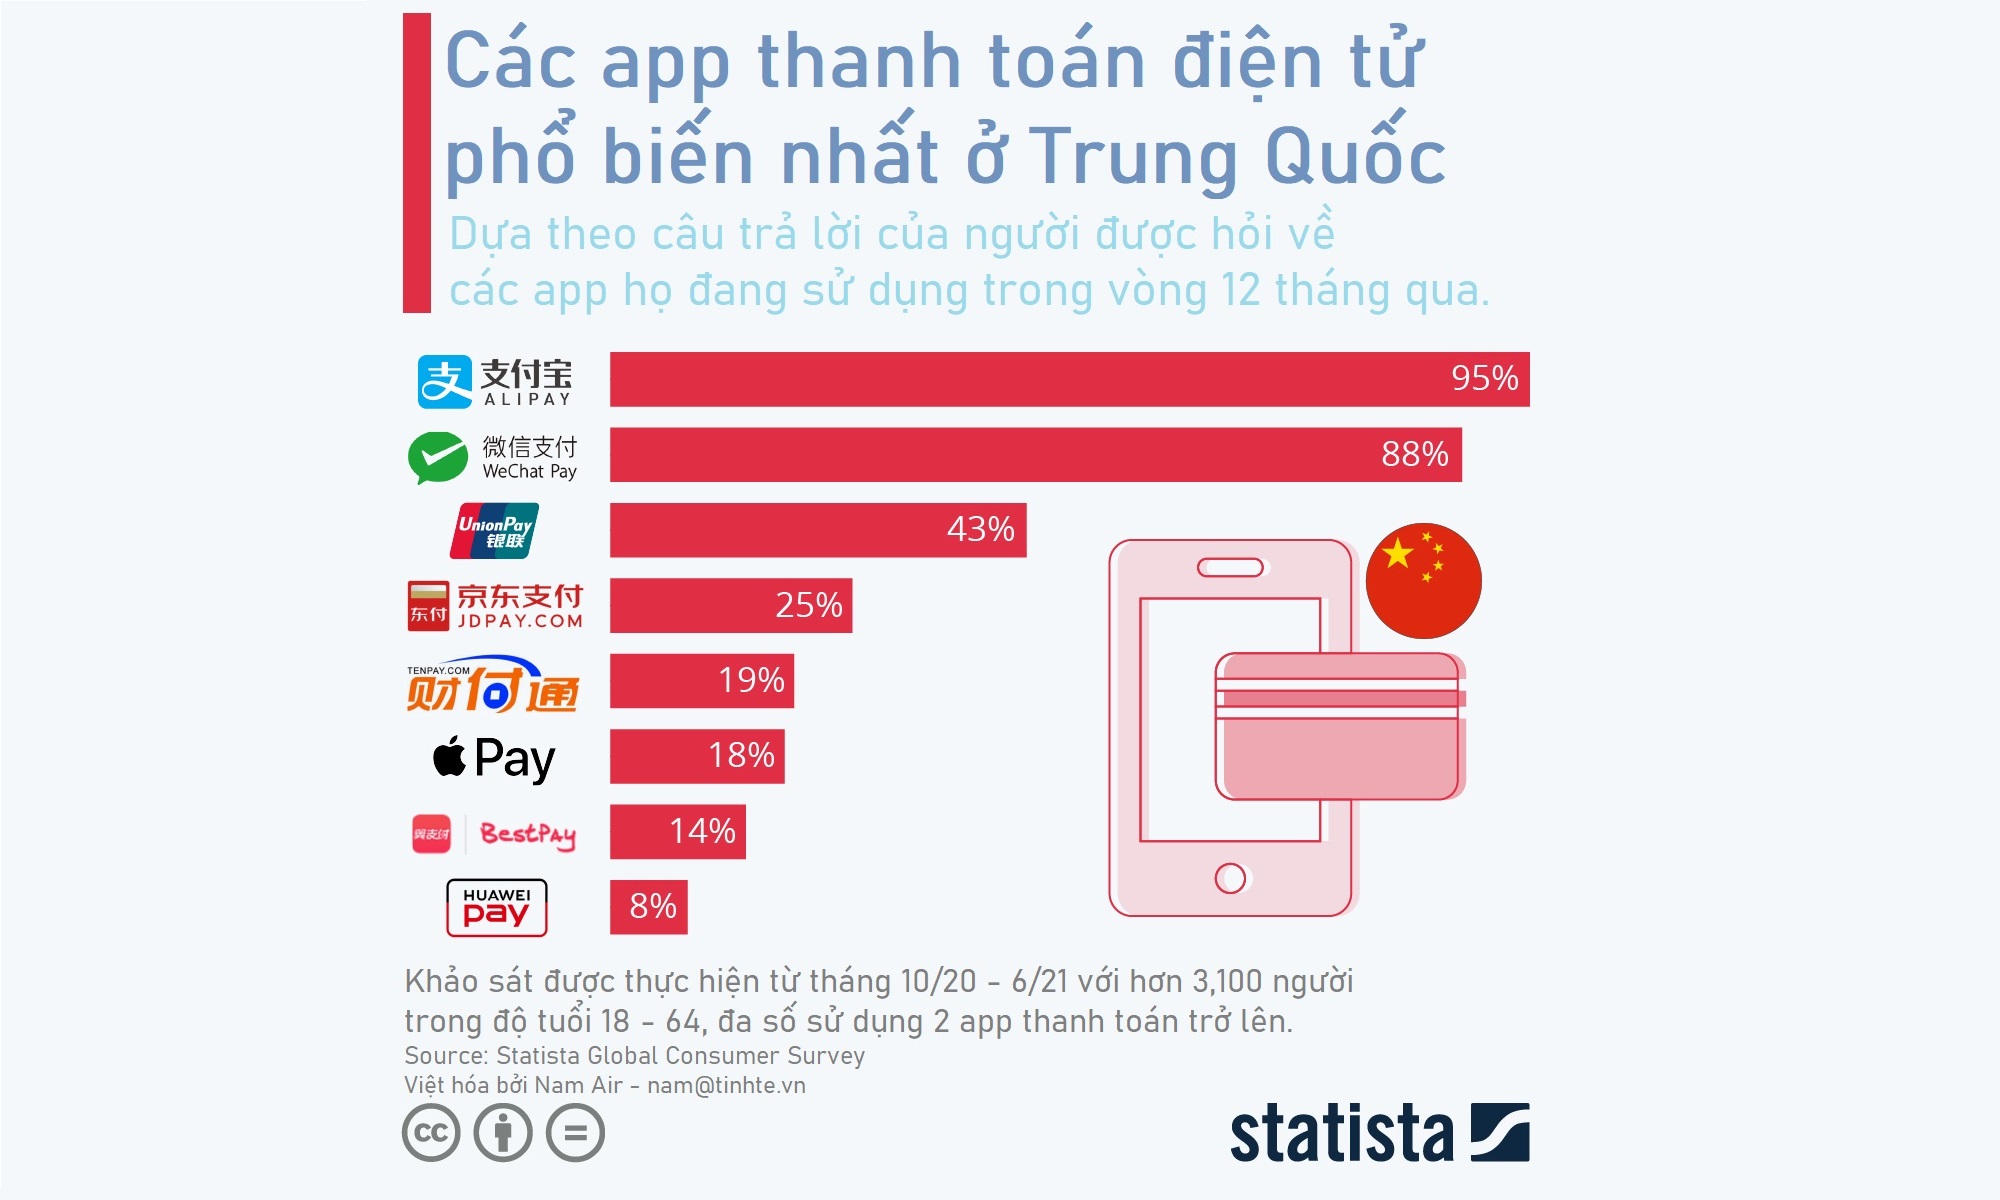 Infographic: Thị phần các cổng thanh toán phổ biến ở TQ